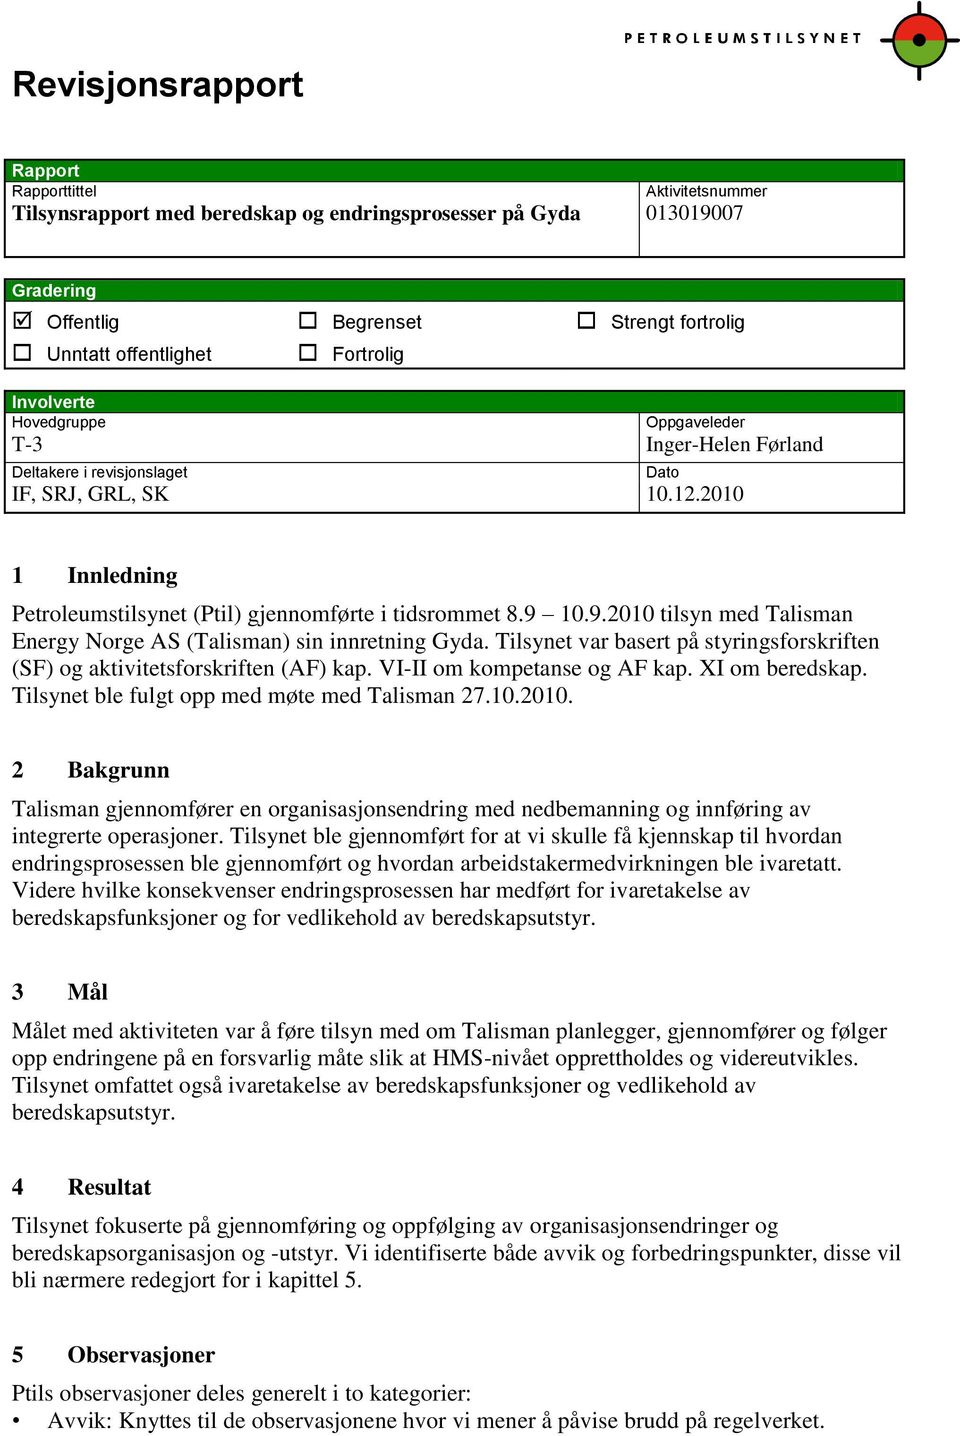 9 10.9.2010 tilsyn med Talisman Energy Norge AS (Talisman) sin innretning Gyda. Tilsynet var basert på styringsforskriften (SF) og aktivitetsforskriften (AF) kap. VI-II om kompetanse og AF kap.